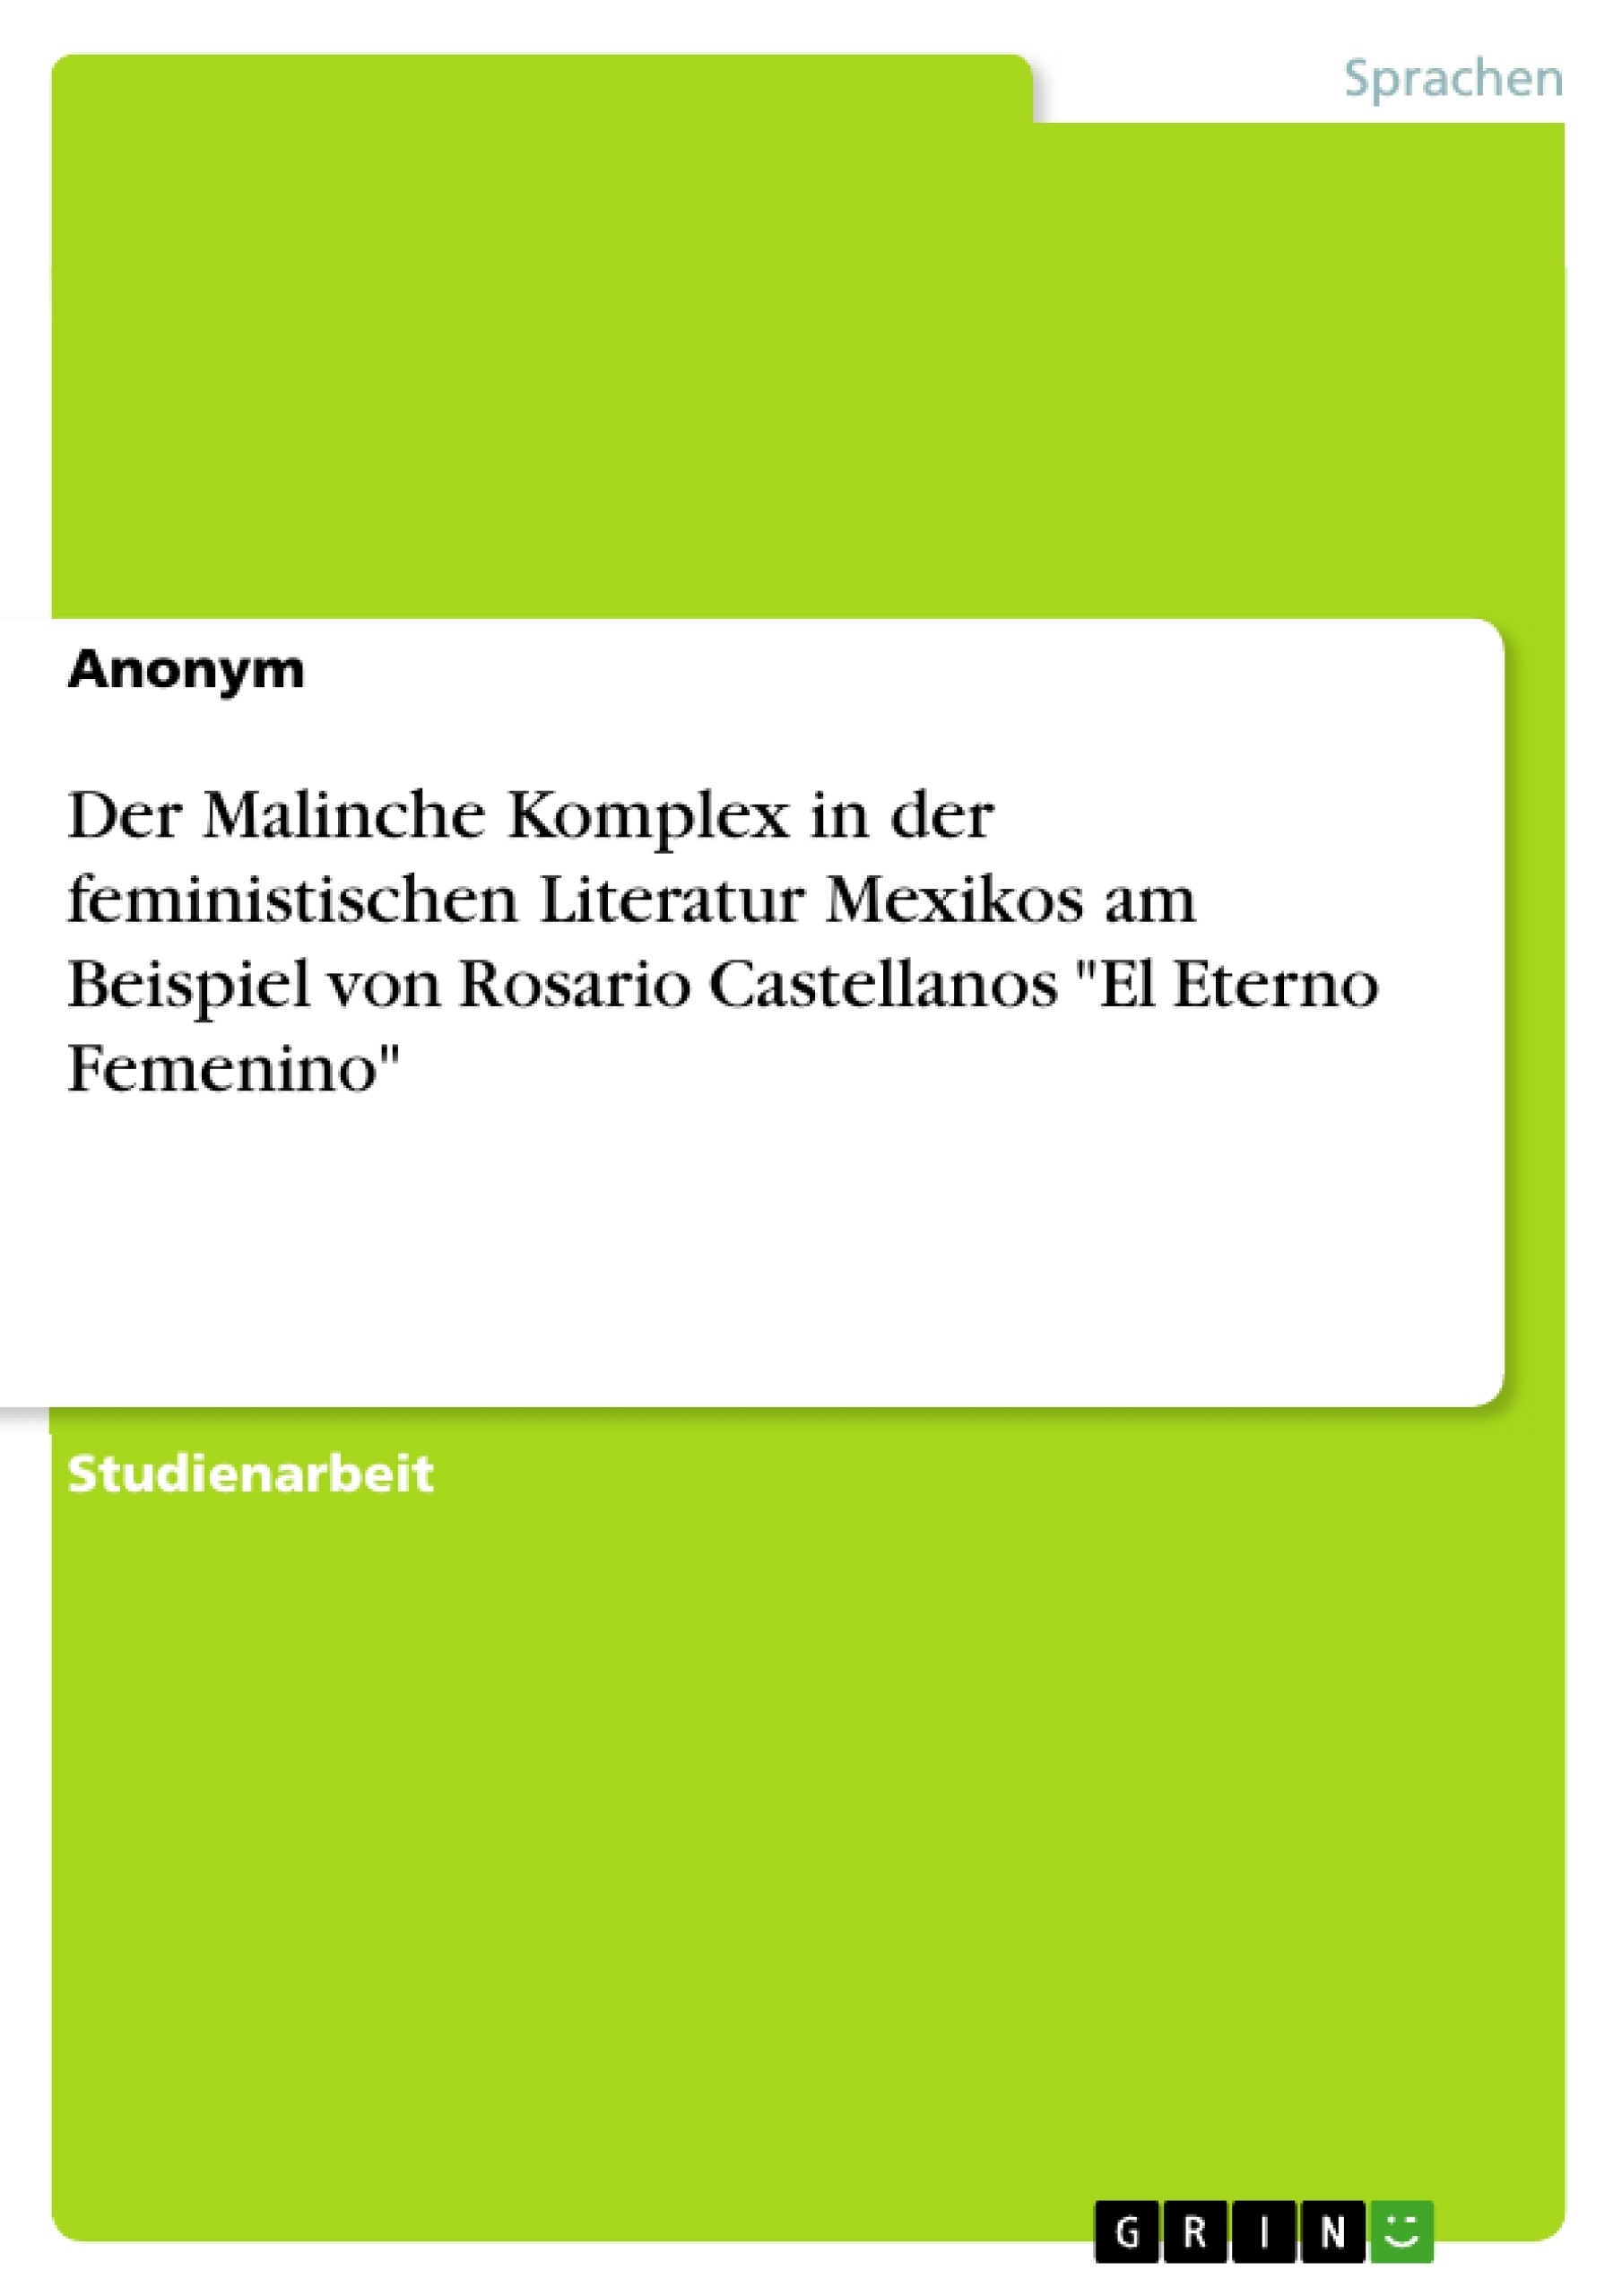 Título: Der Malinche Komplex in der feministischen Literatur Mexikos am Beispiel von Rosario Castellanos "El Eterno Femenino"